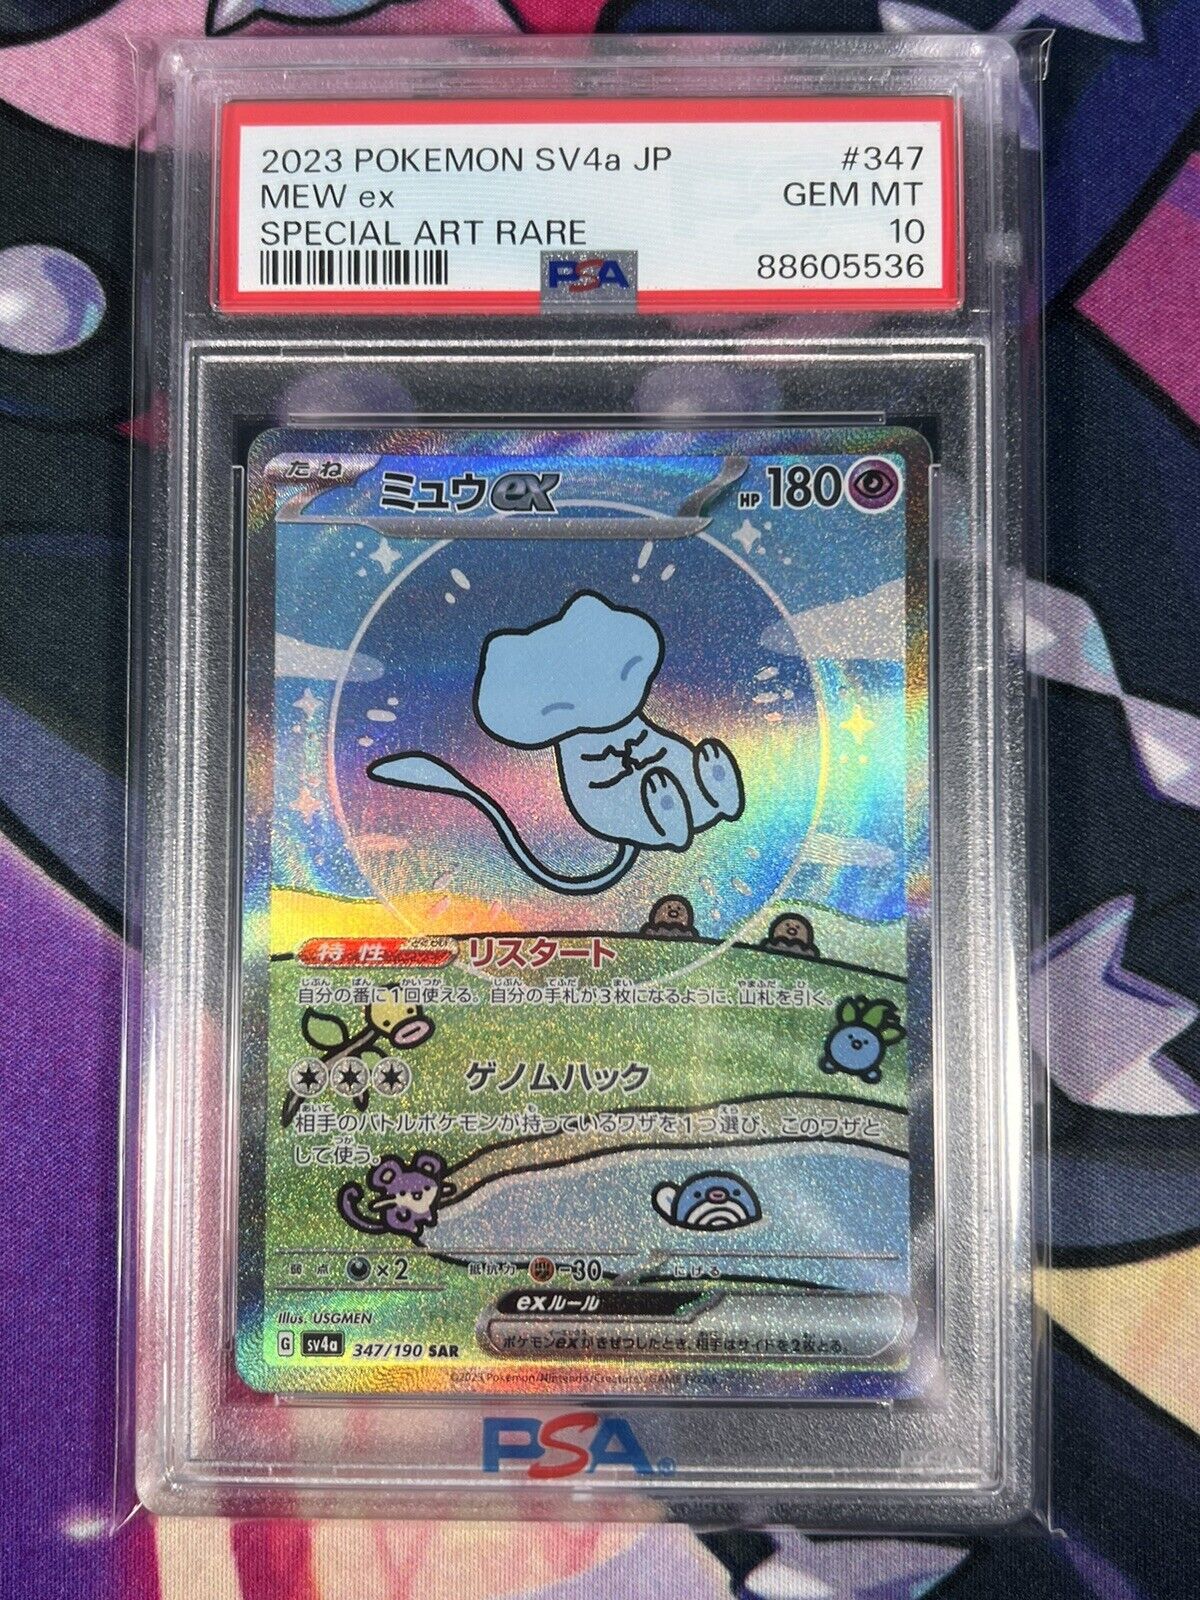 PSA 10 GEM Mew ex SAR 347/190 SV4a Shiny Treasure Pokemon Card Japanese